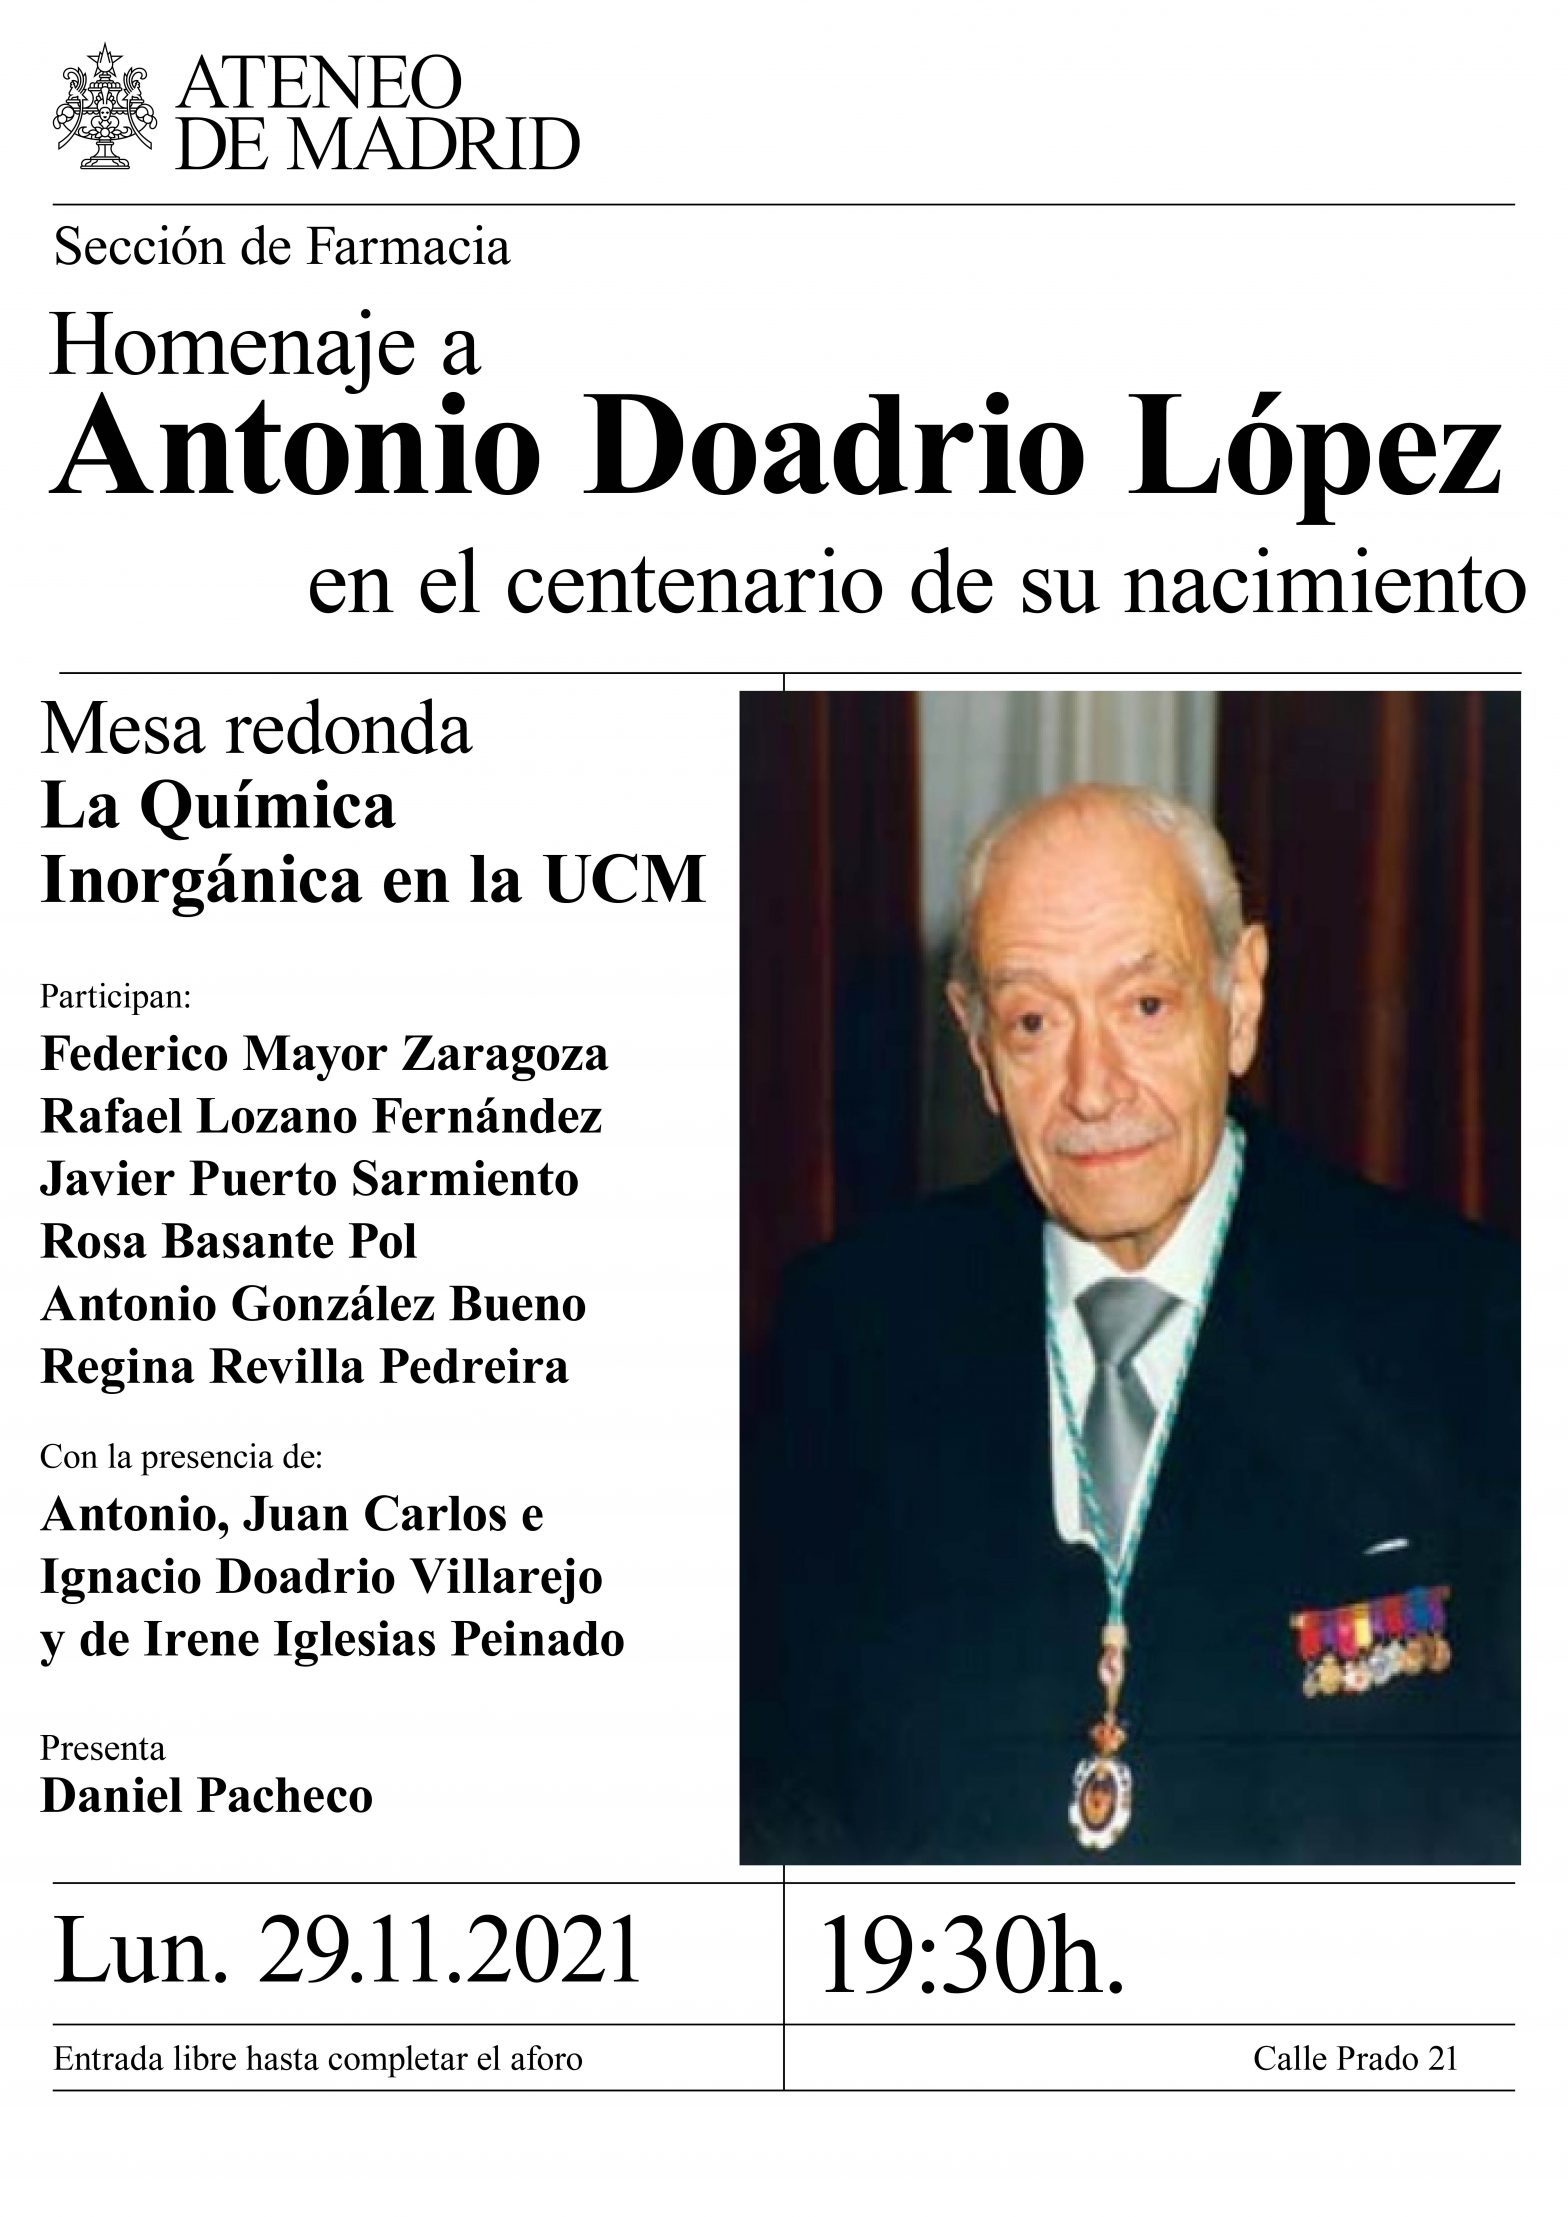 La Química Inorgánica en la Facultad de Farmacia de la UCM. Profesor Antonio Doadrio López en su centenario